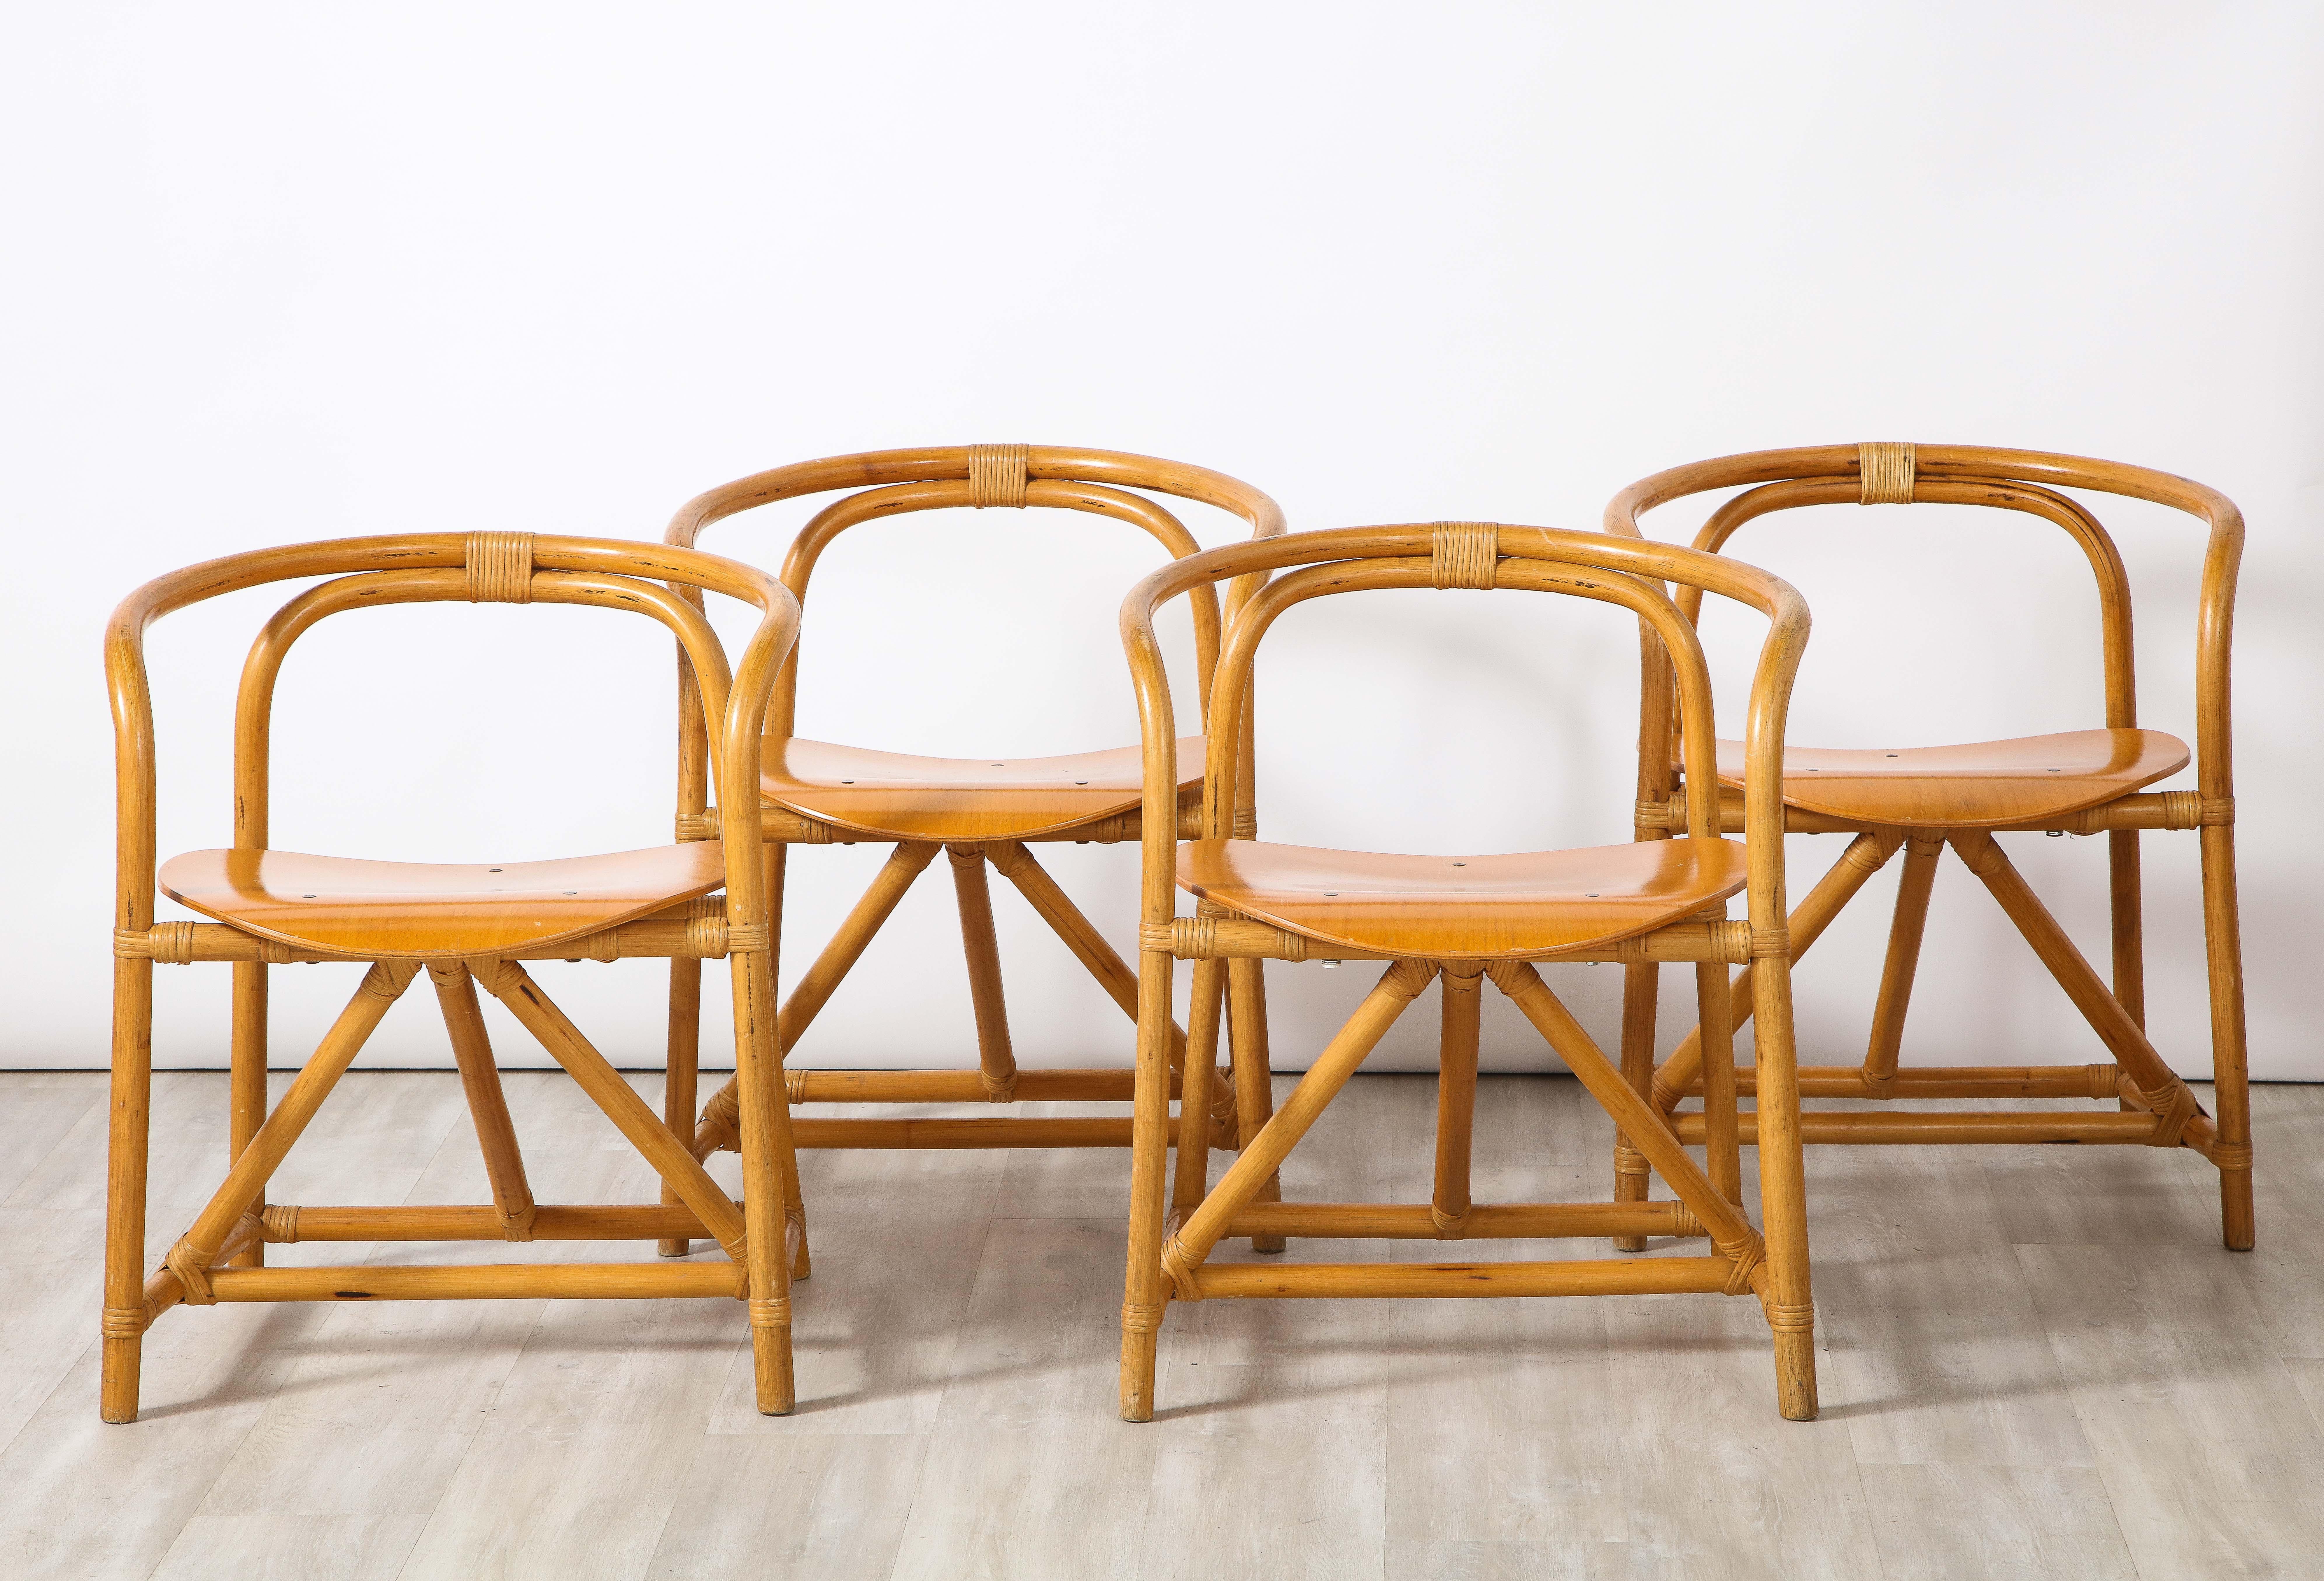 Un charmant ensemble de quatre chaises de salle à manger italiennes en bambou et bois, avec des bras curvilignes et un siège circulaire en bois courbé soutenu par un croisillon et un design en V.
Italien, vers 1960.
Dimensions : 27 1/2